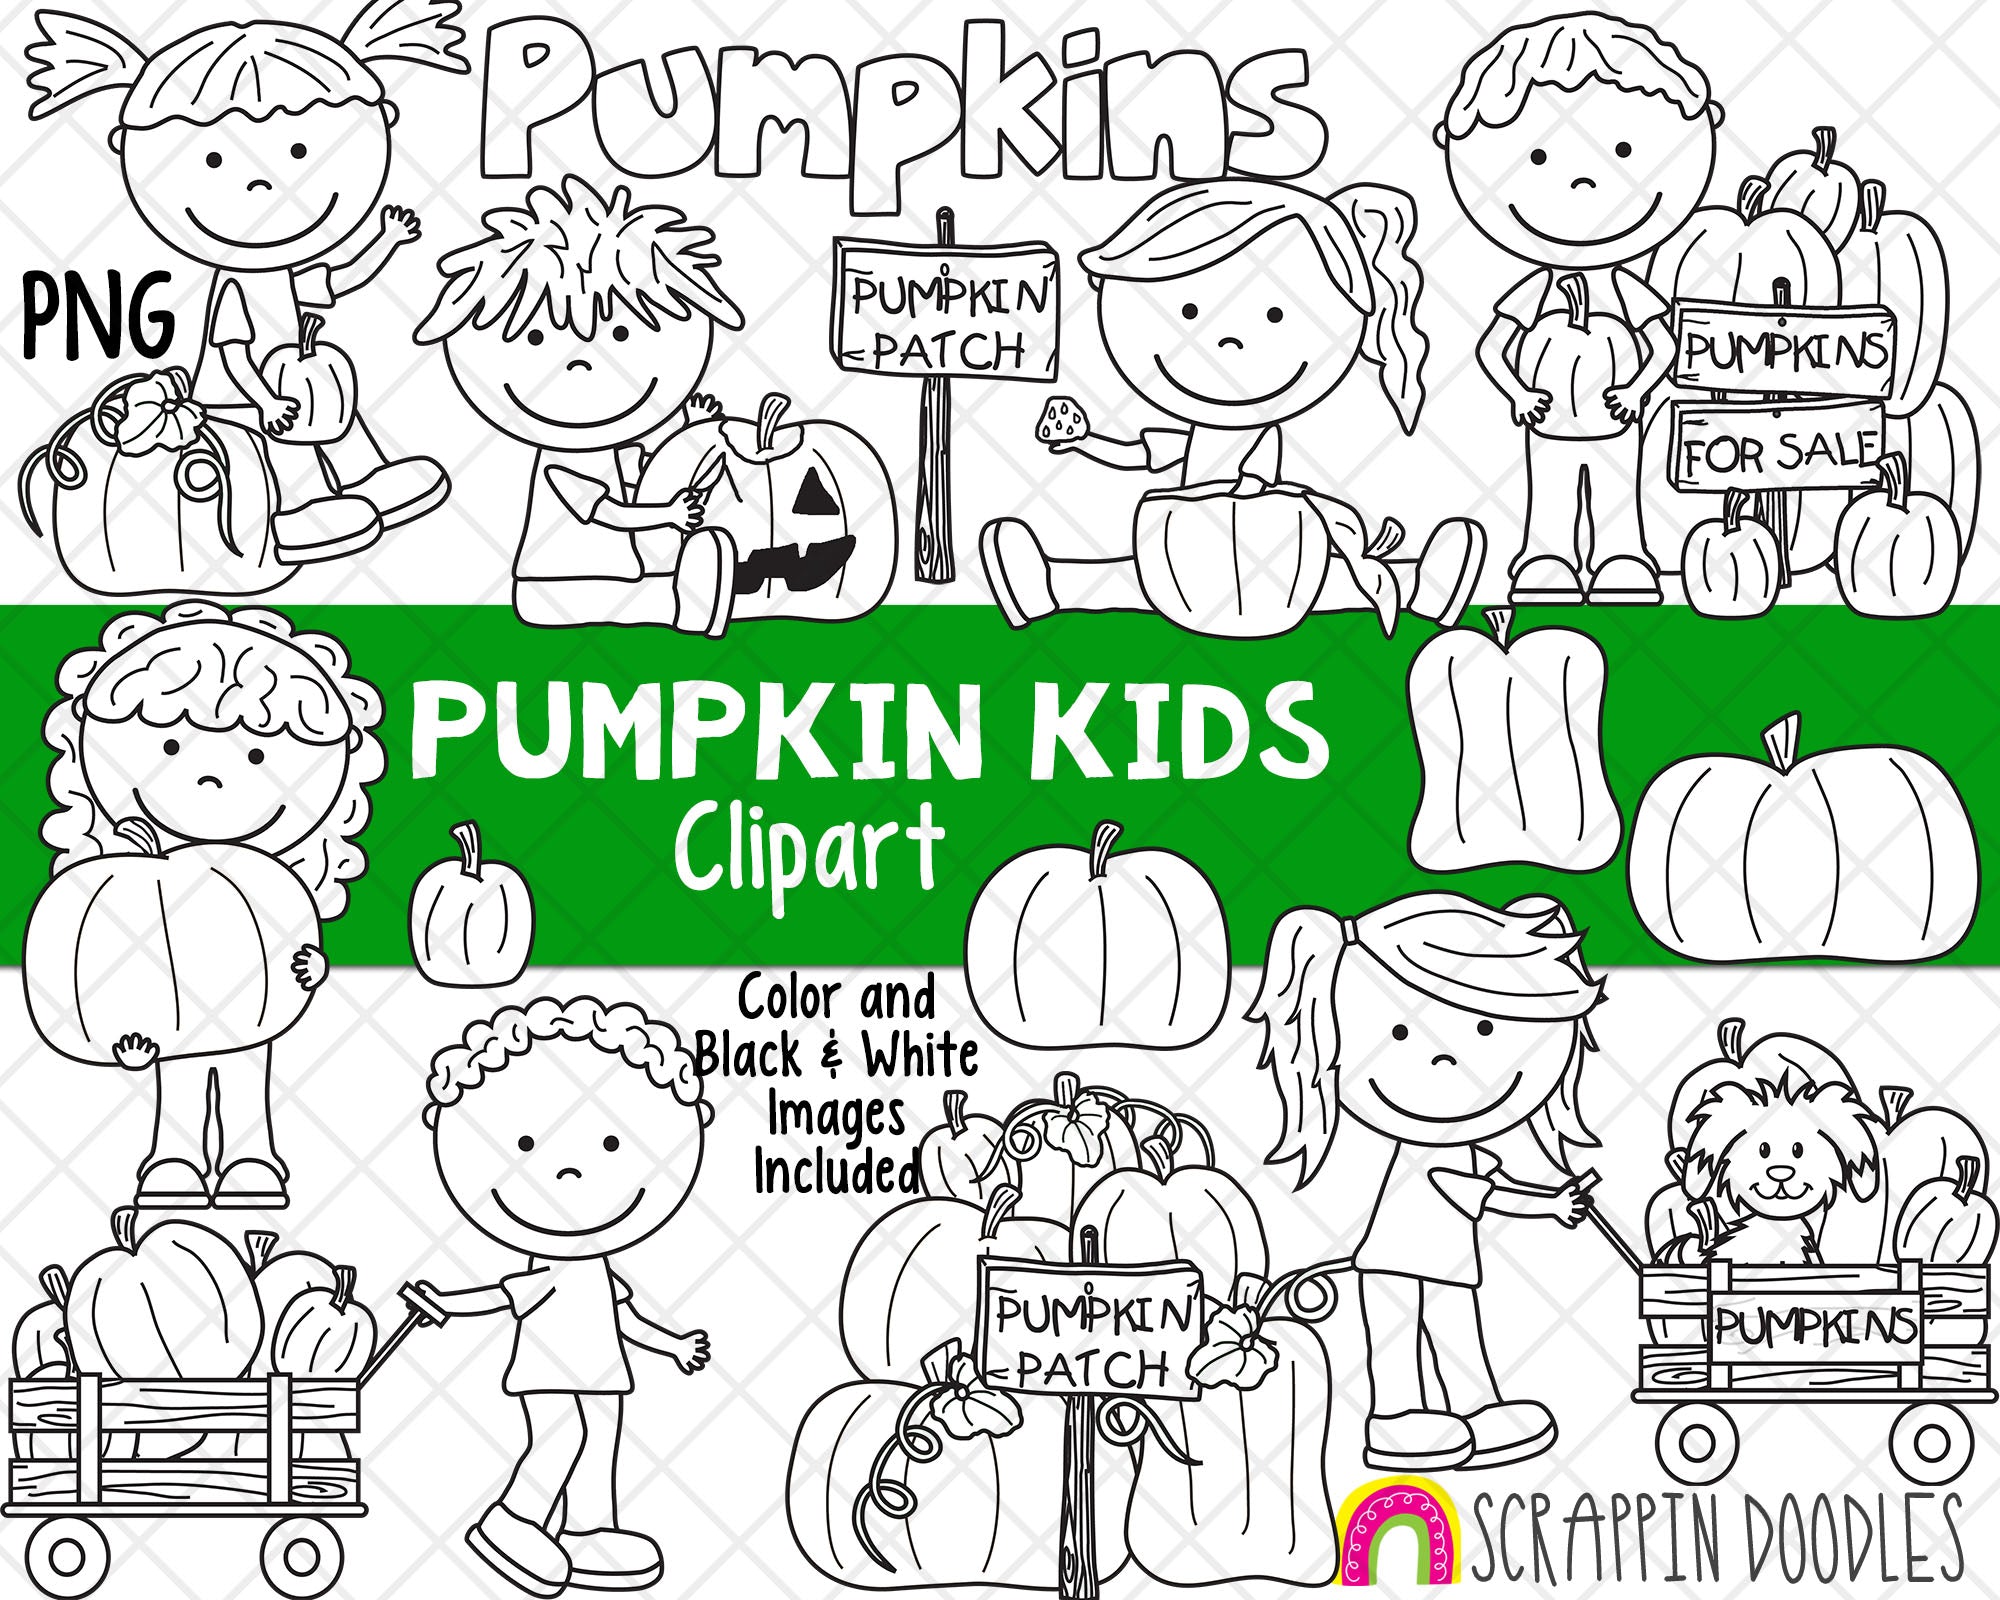 Pumpkin kids clipart